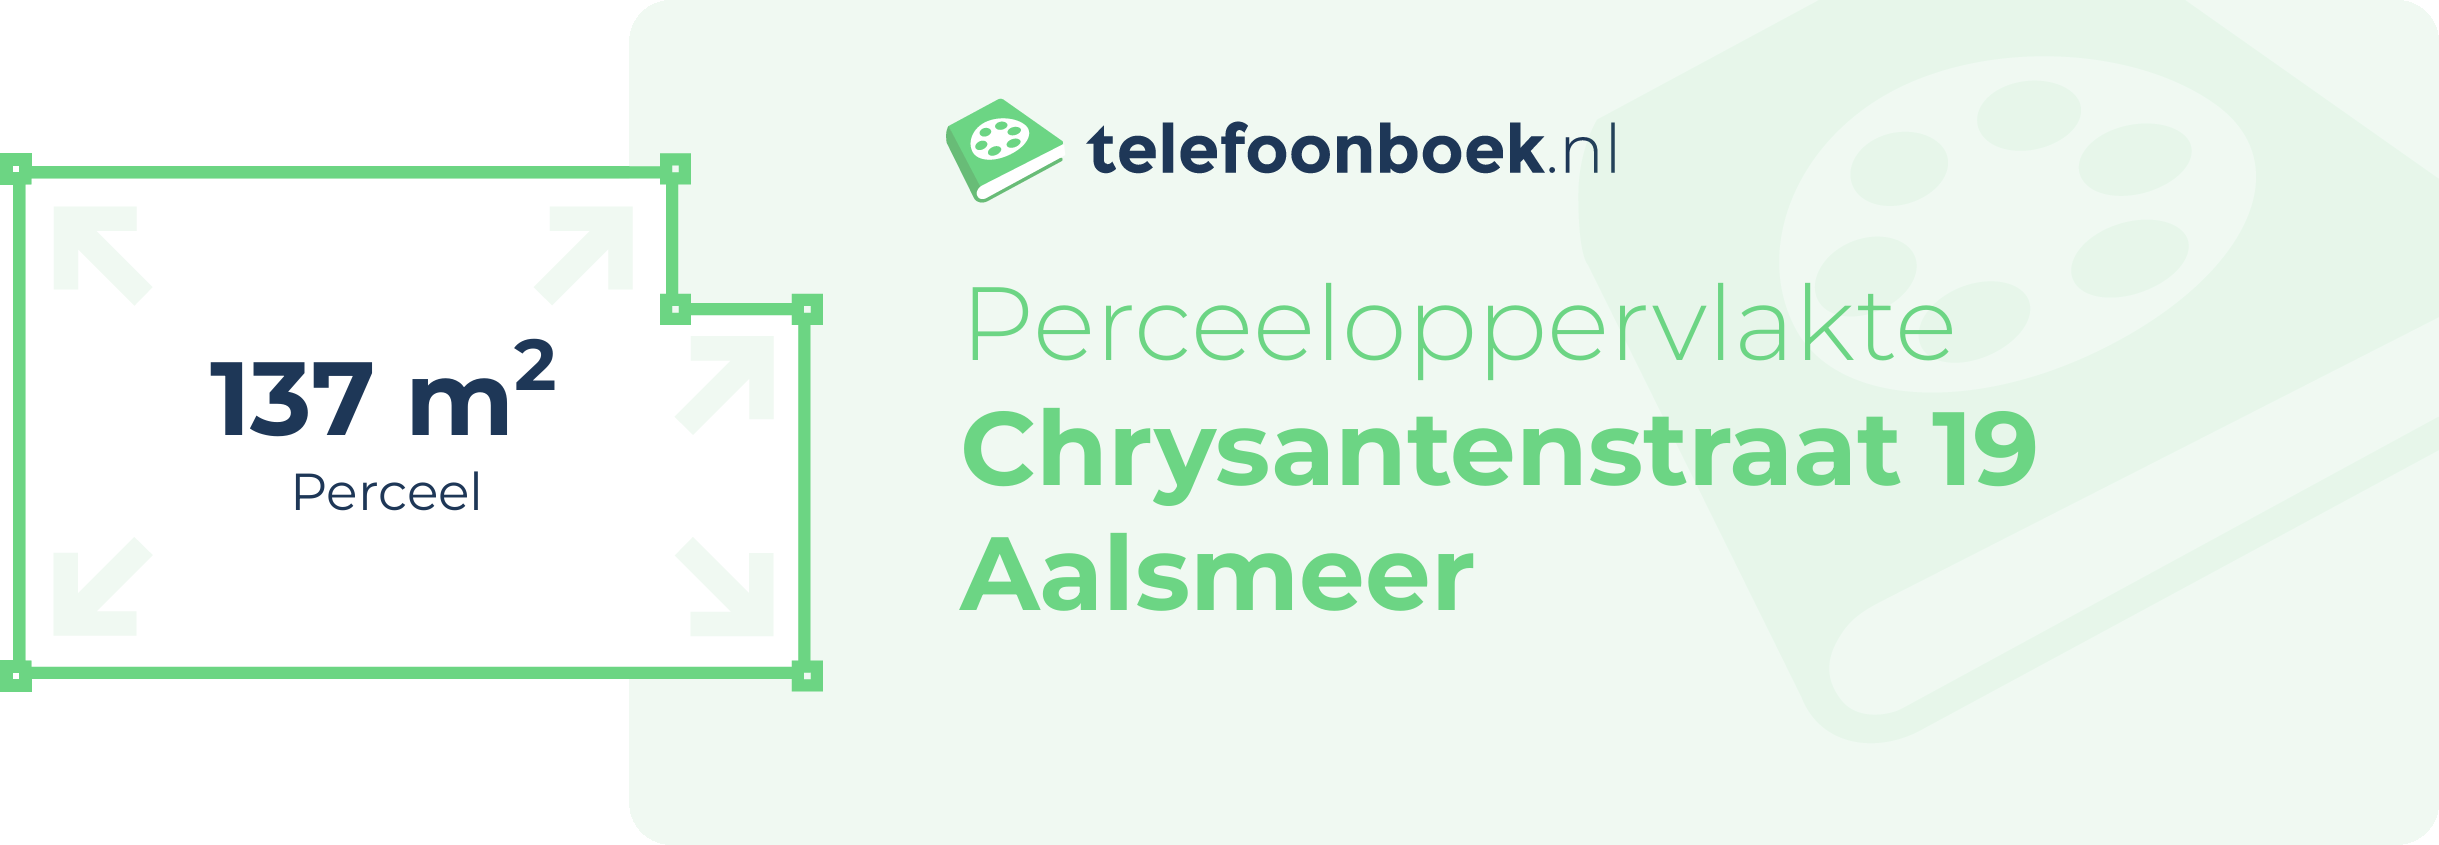 Perceeloppervlakte Chrysantenstraat 19 Aalsmeer